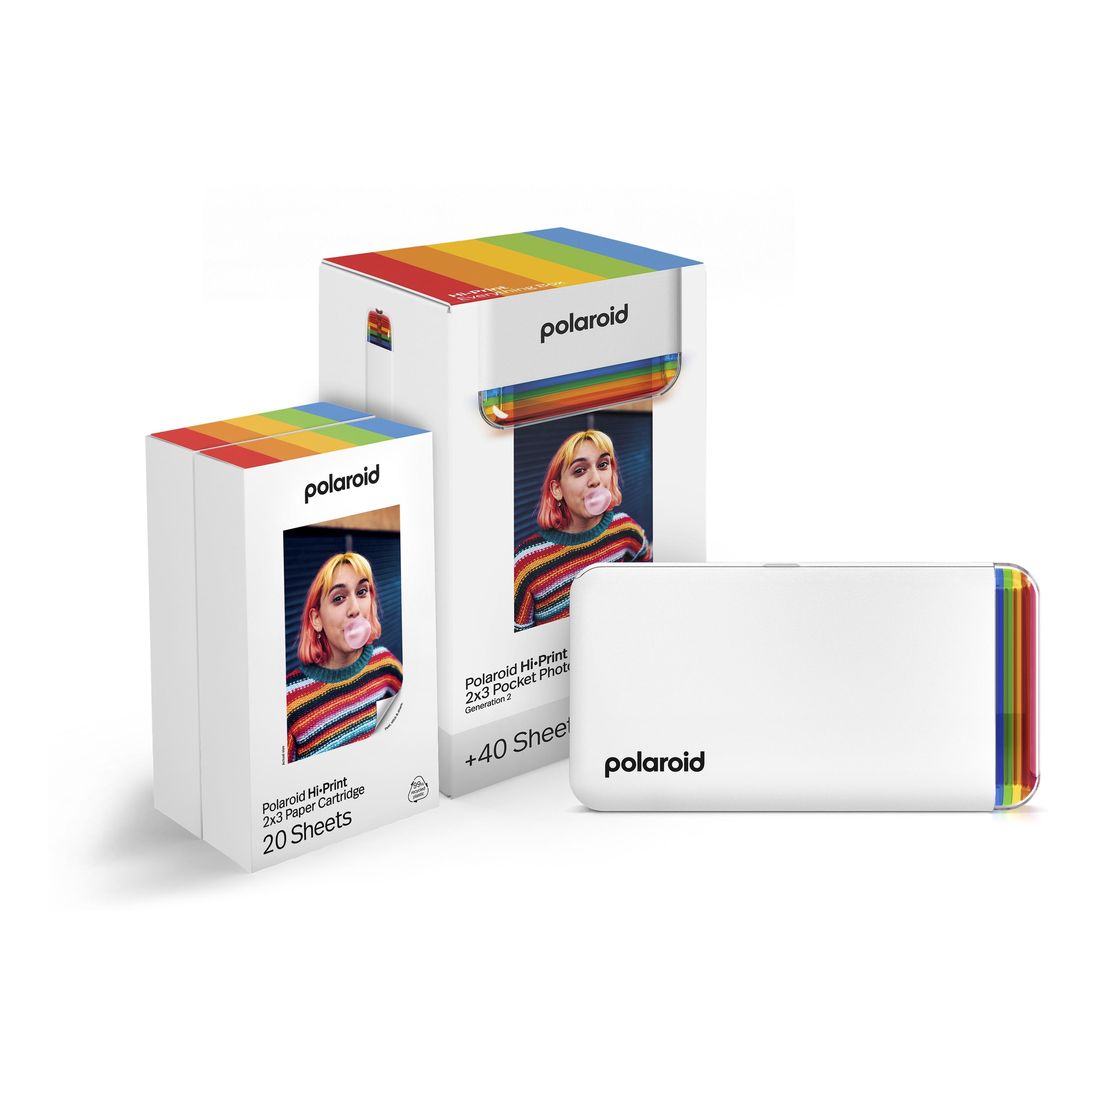 Polaroid HiPrint (Gen 2) 2x3 Pocket Photo Printer - Everything Box - White